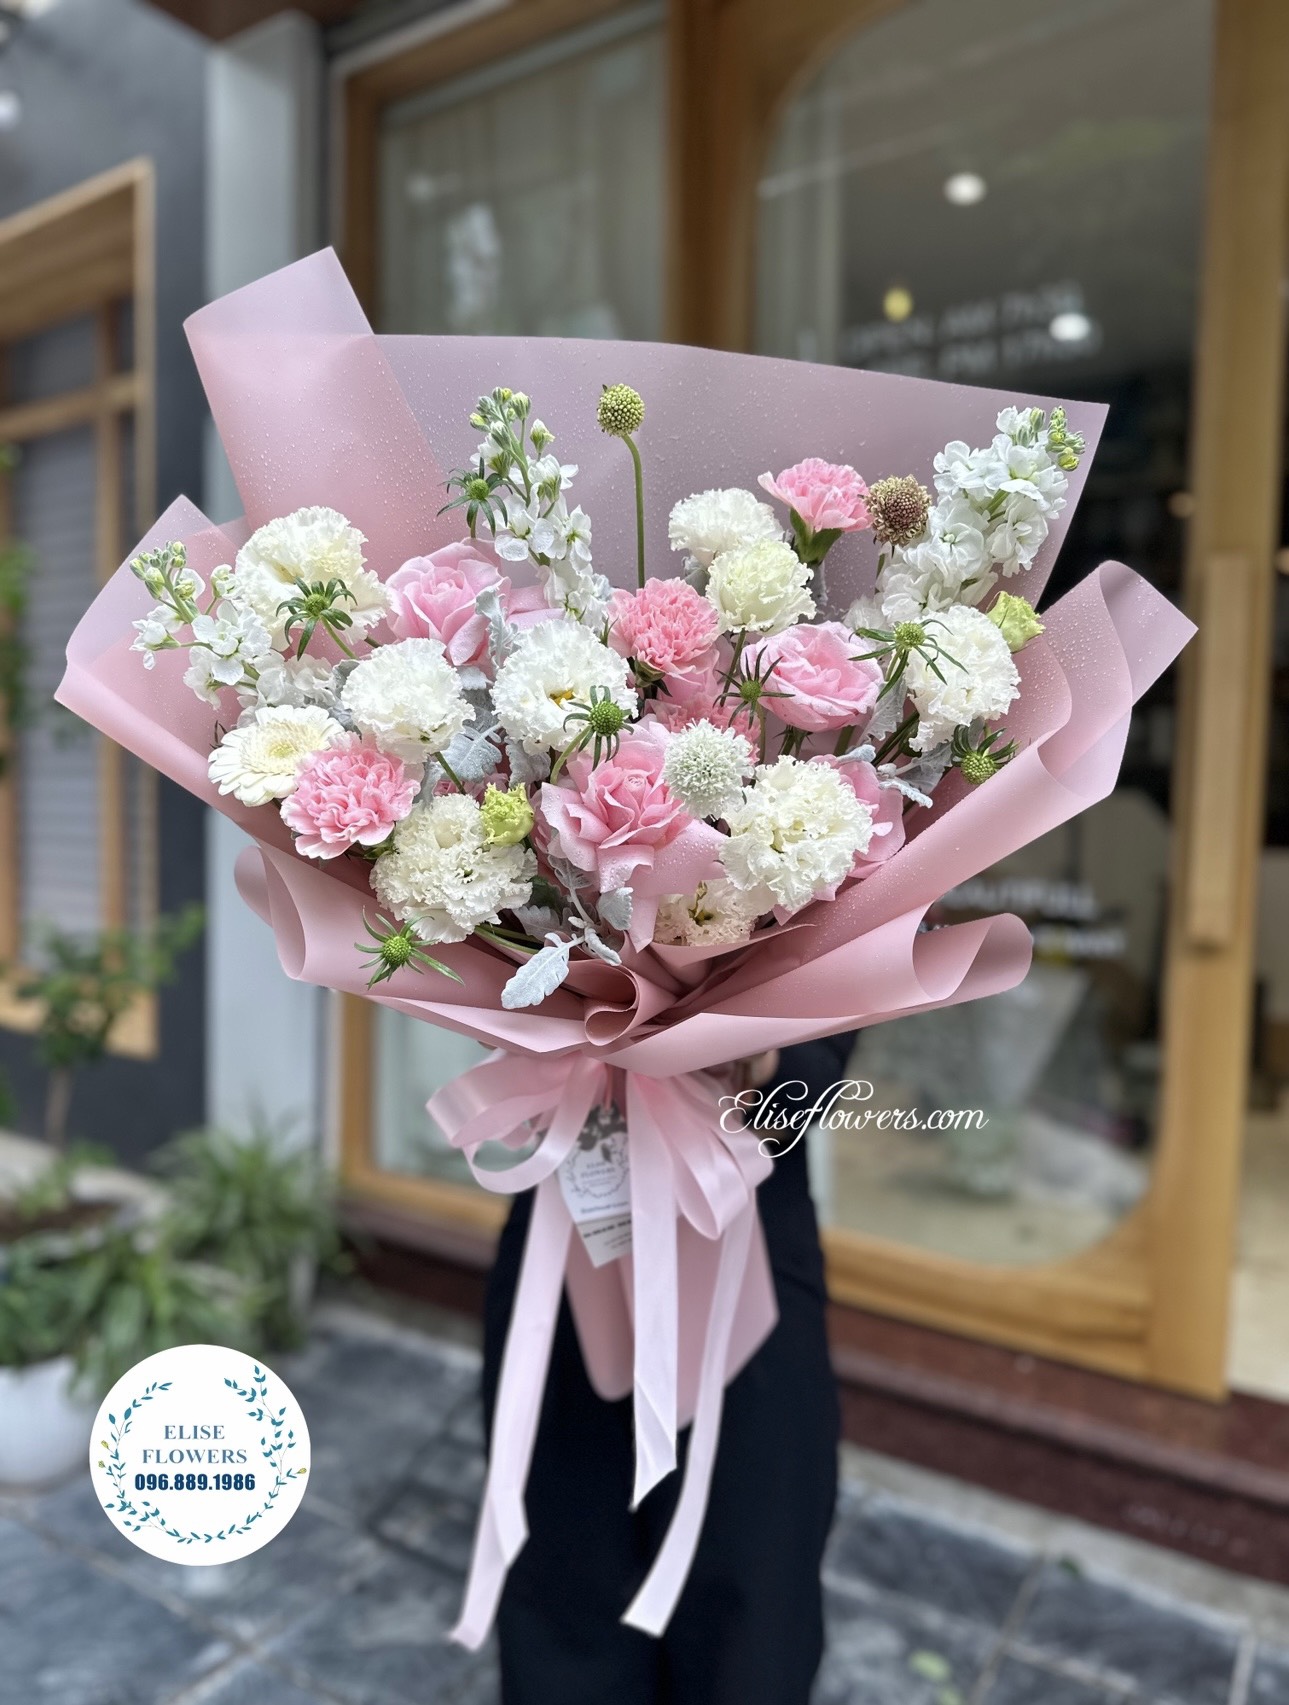 Hoa sinh nhật quận Hoàn Kiếm - Hà Nội. Bó hoa sinh nhật đẹp quận Hoàn Kiếm - Hà Nội